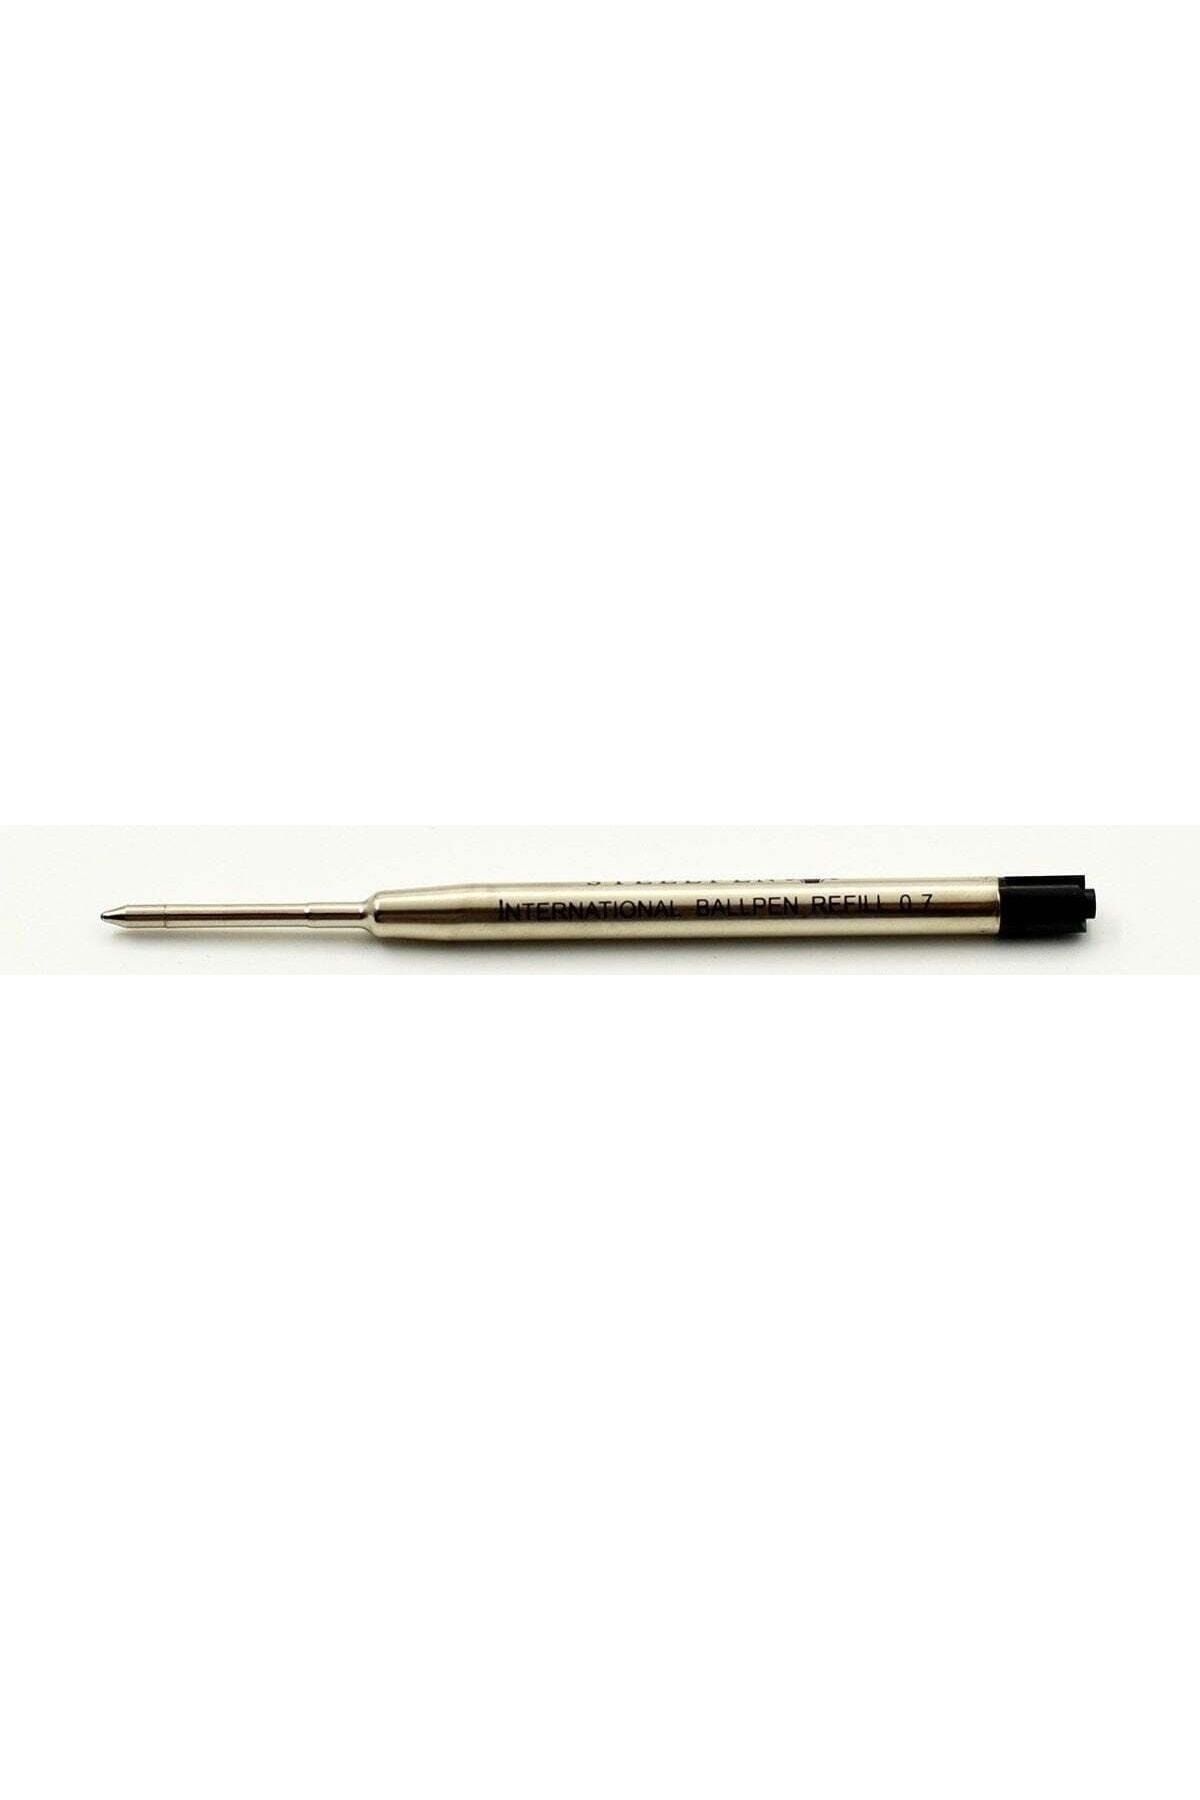 steelpen Tükenmez Kalem Yedeği Parker Tipi Metal Siyah Refil Y100s